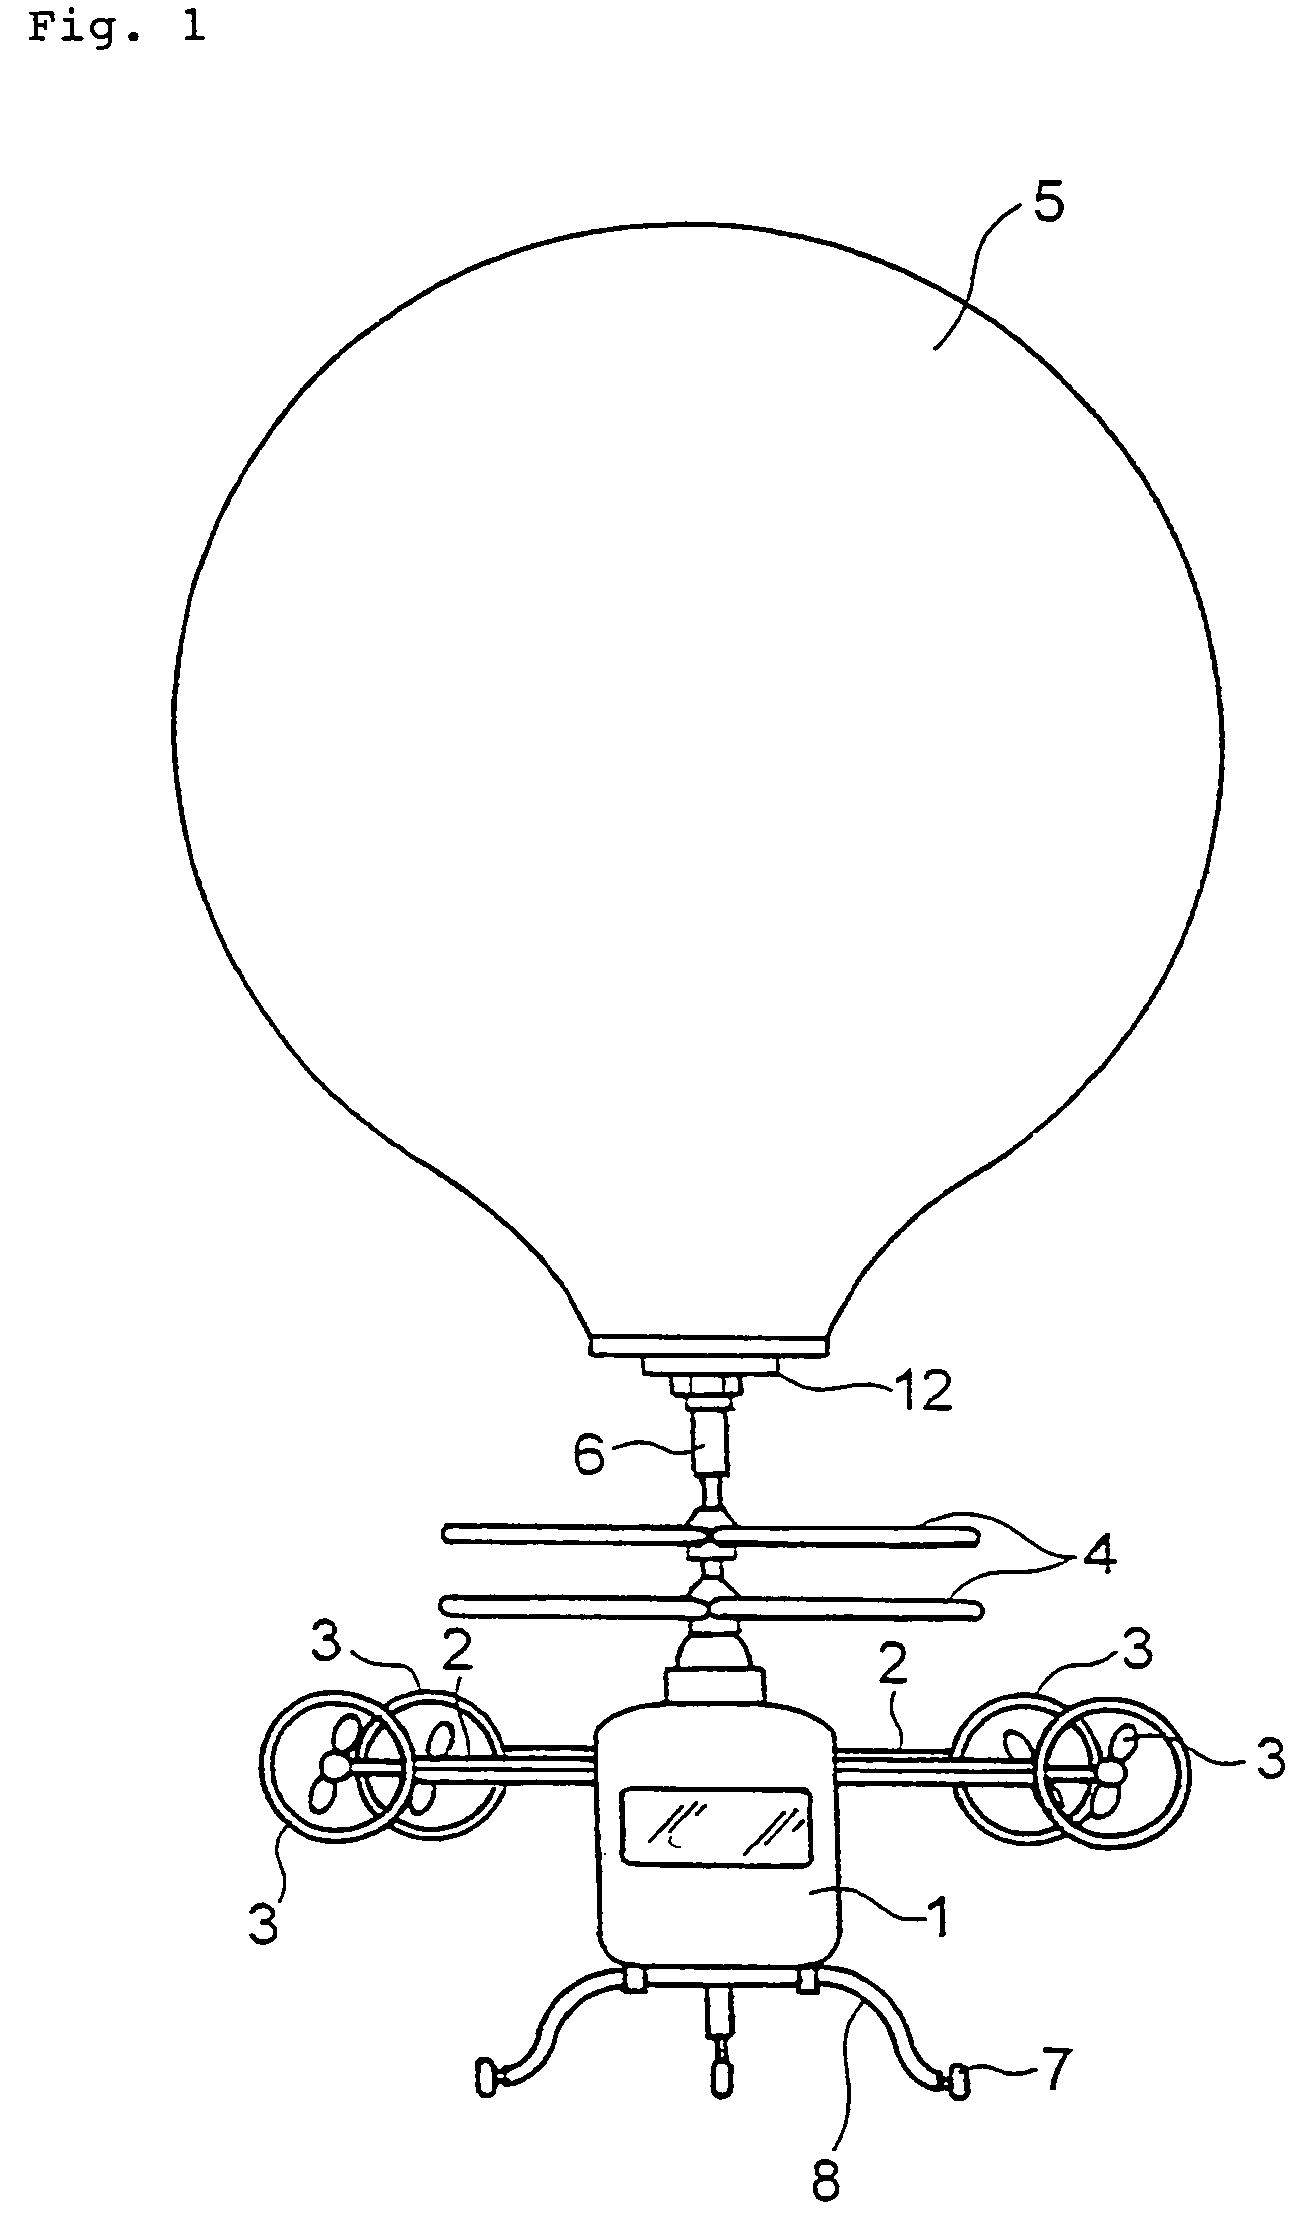 Multi-purpose airship